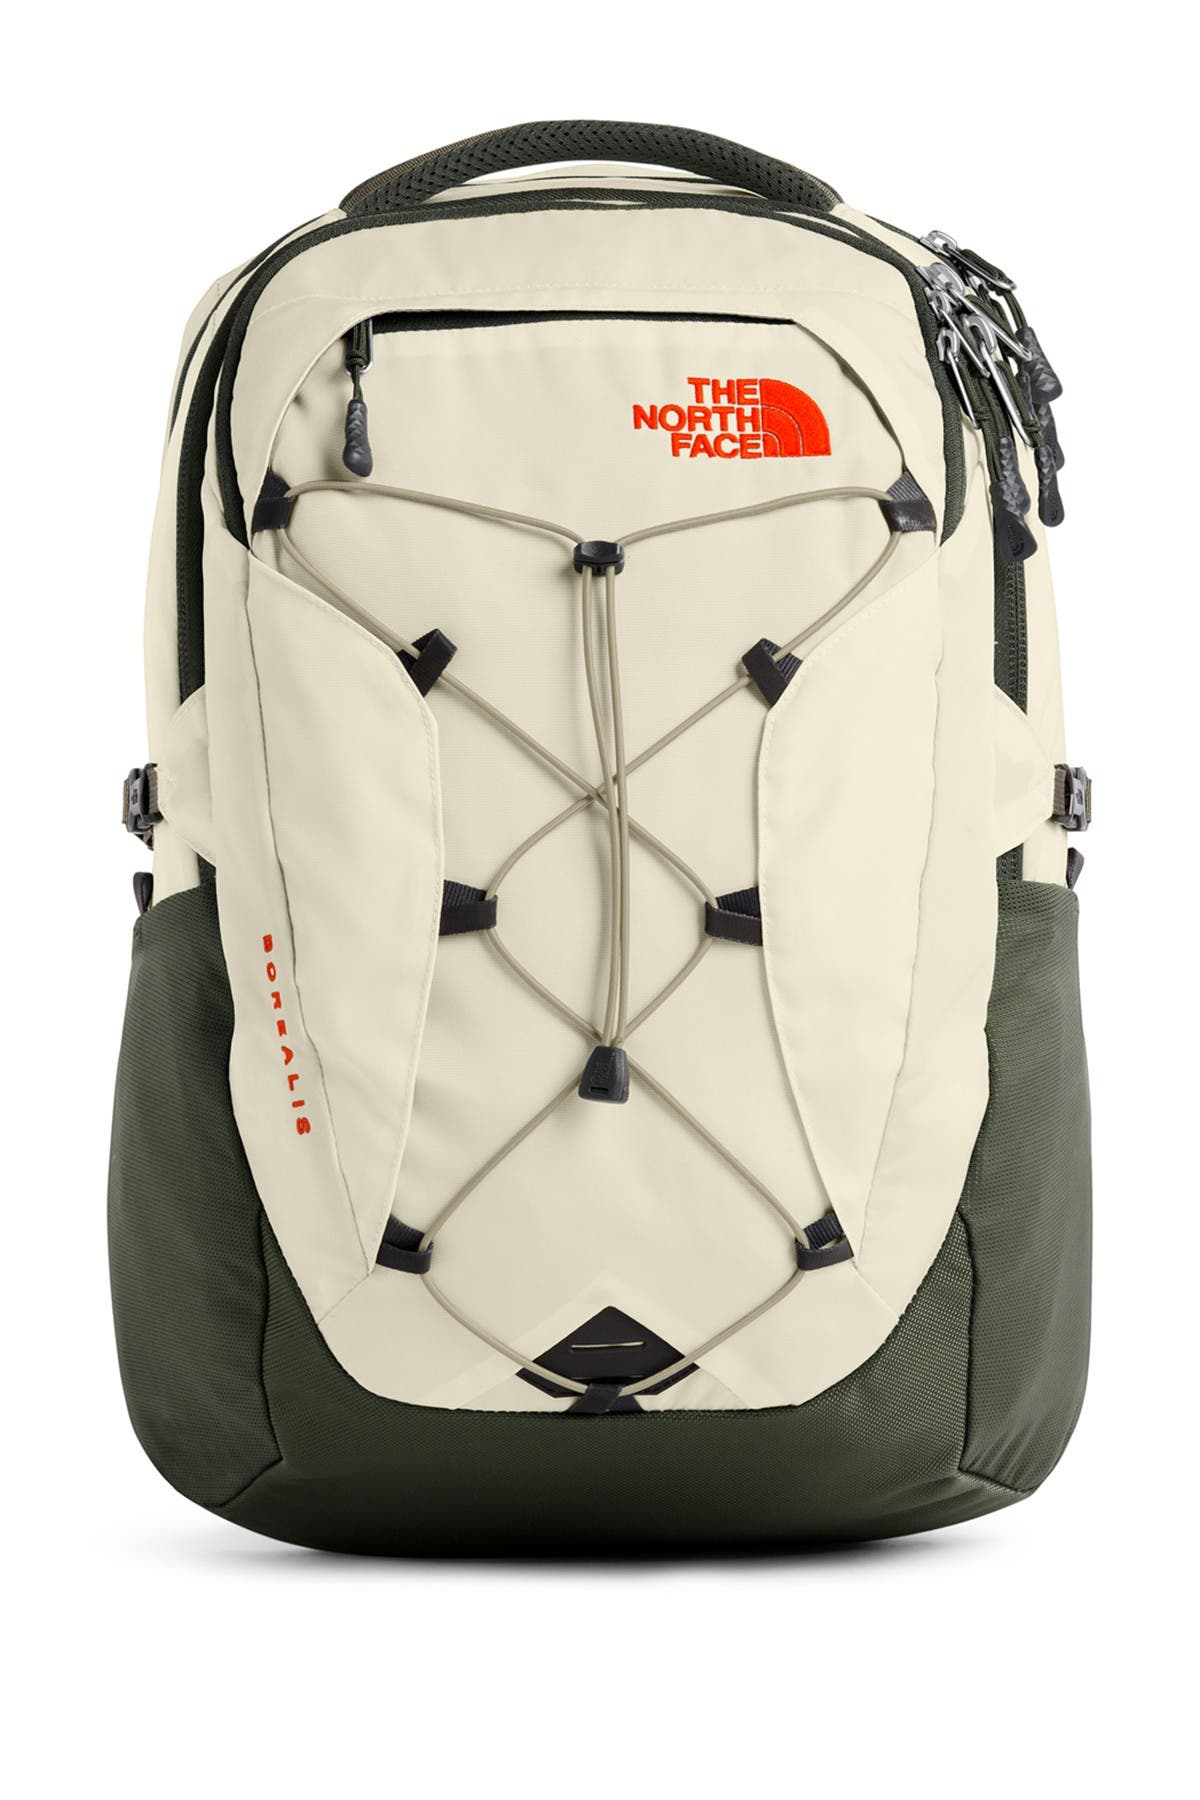 north face backpack nordstrom rack